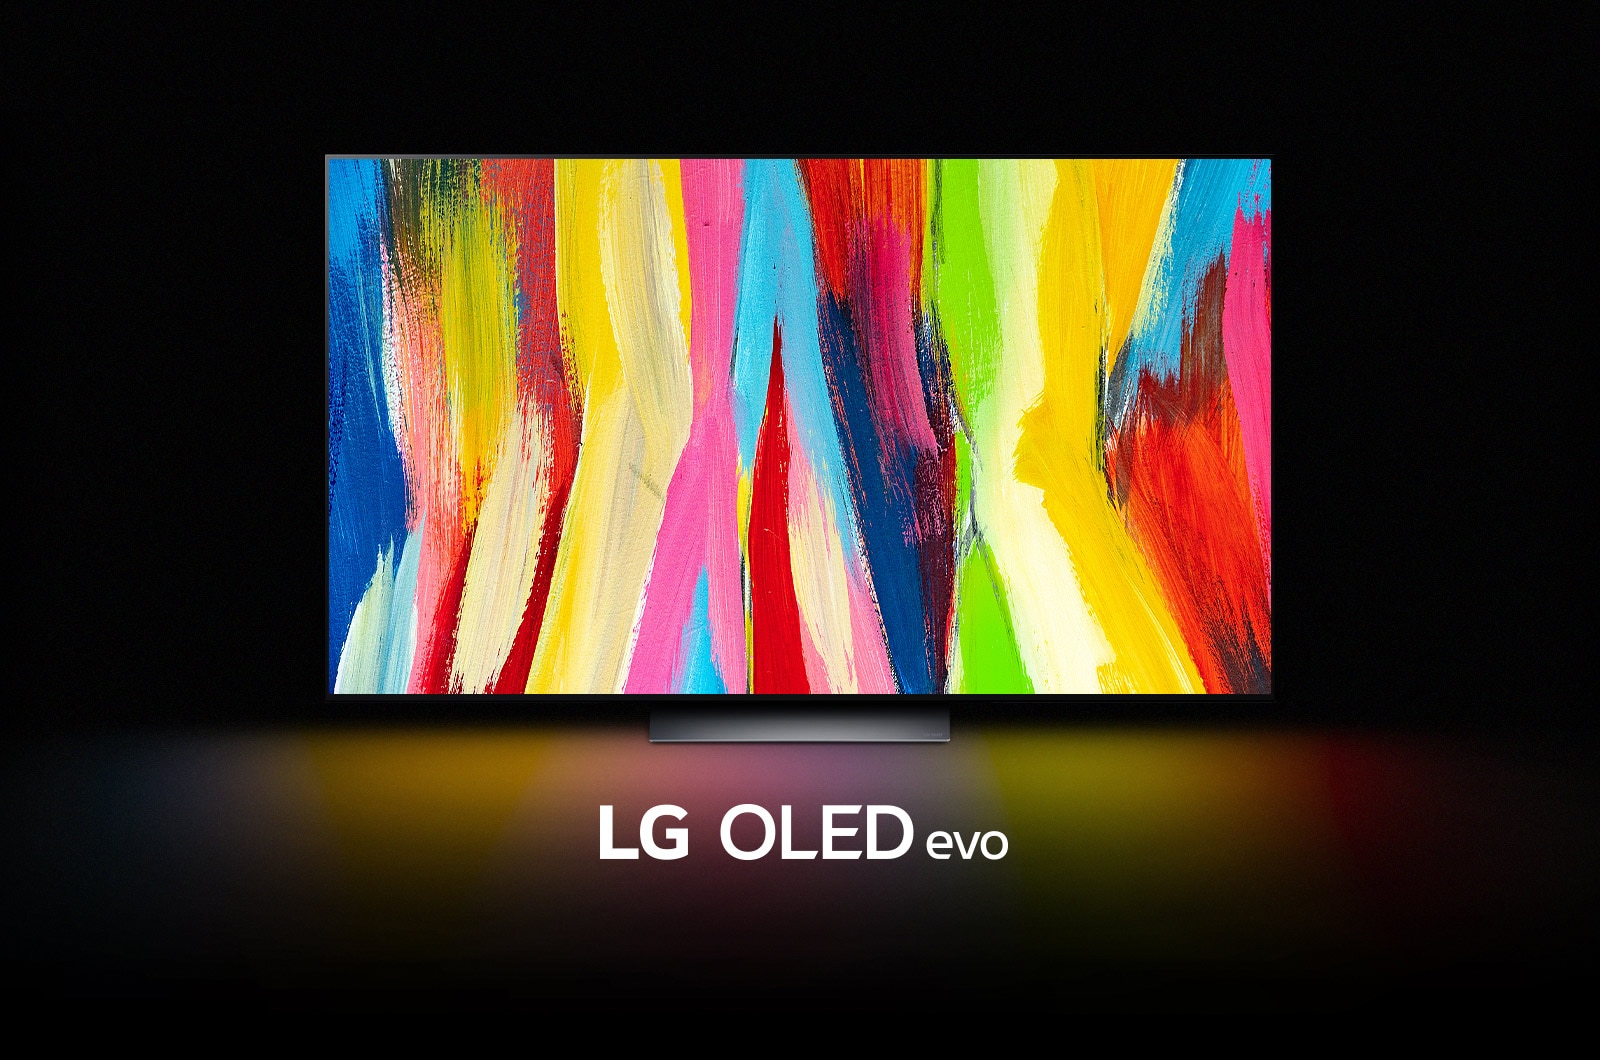 Un LG OLED C2 está en una habitación oscura, mostrando una colorida obra de arte abstracta de líneas verticales y las palabras "LG OLED evo" debajo.